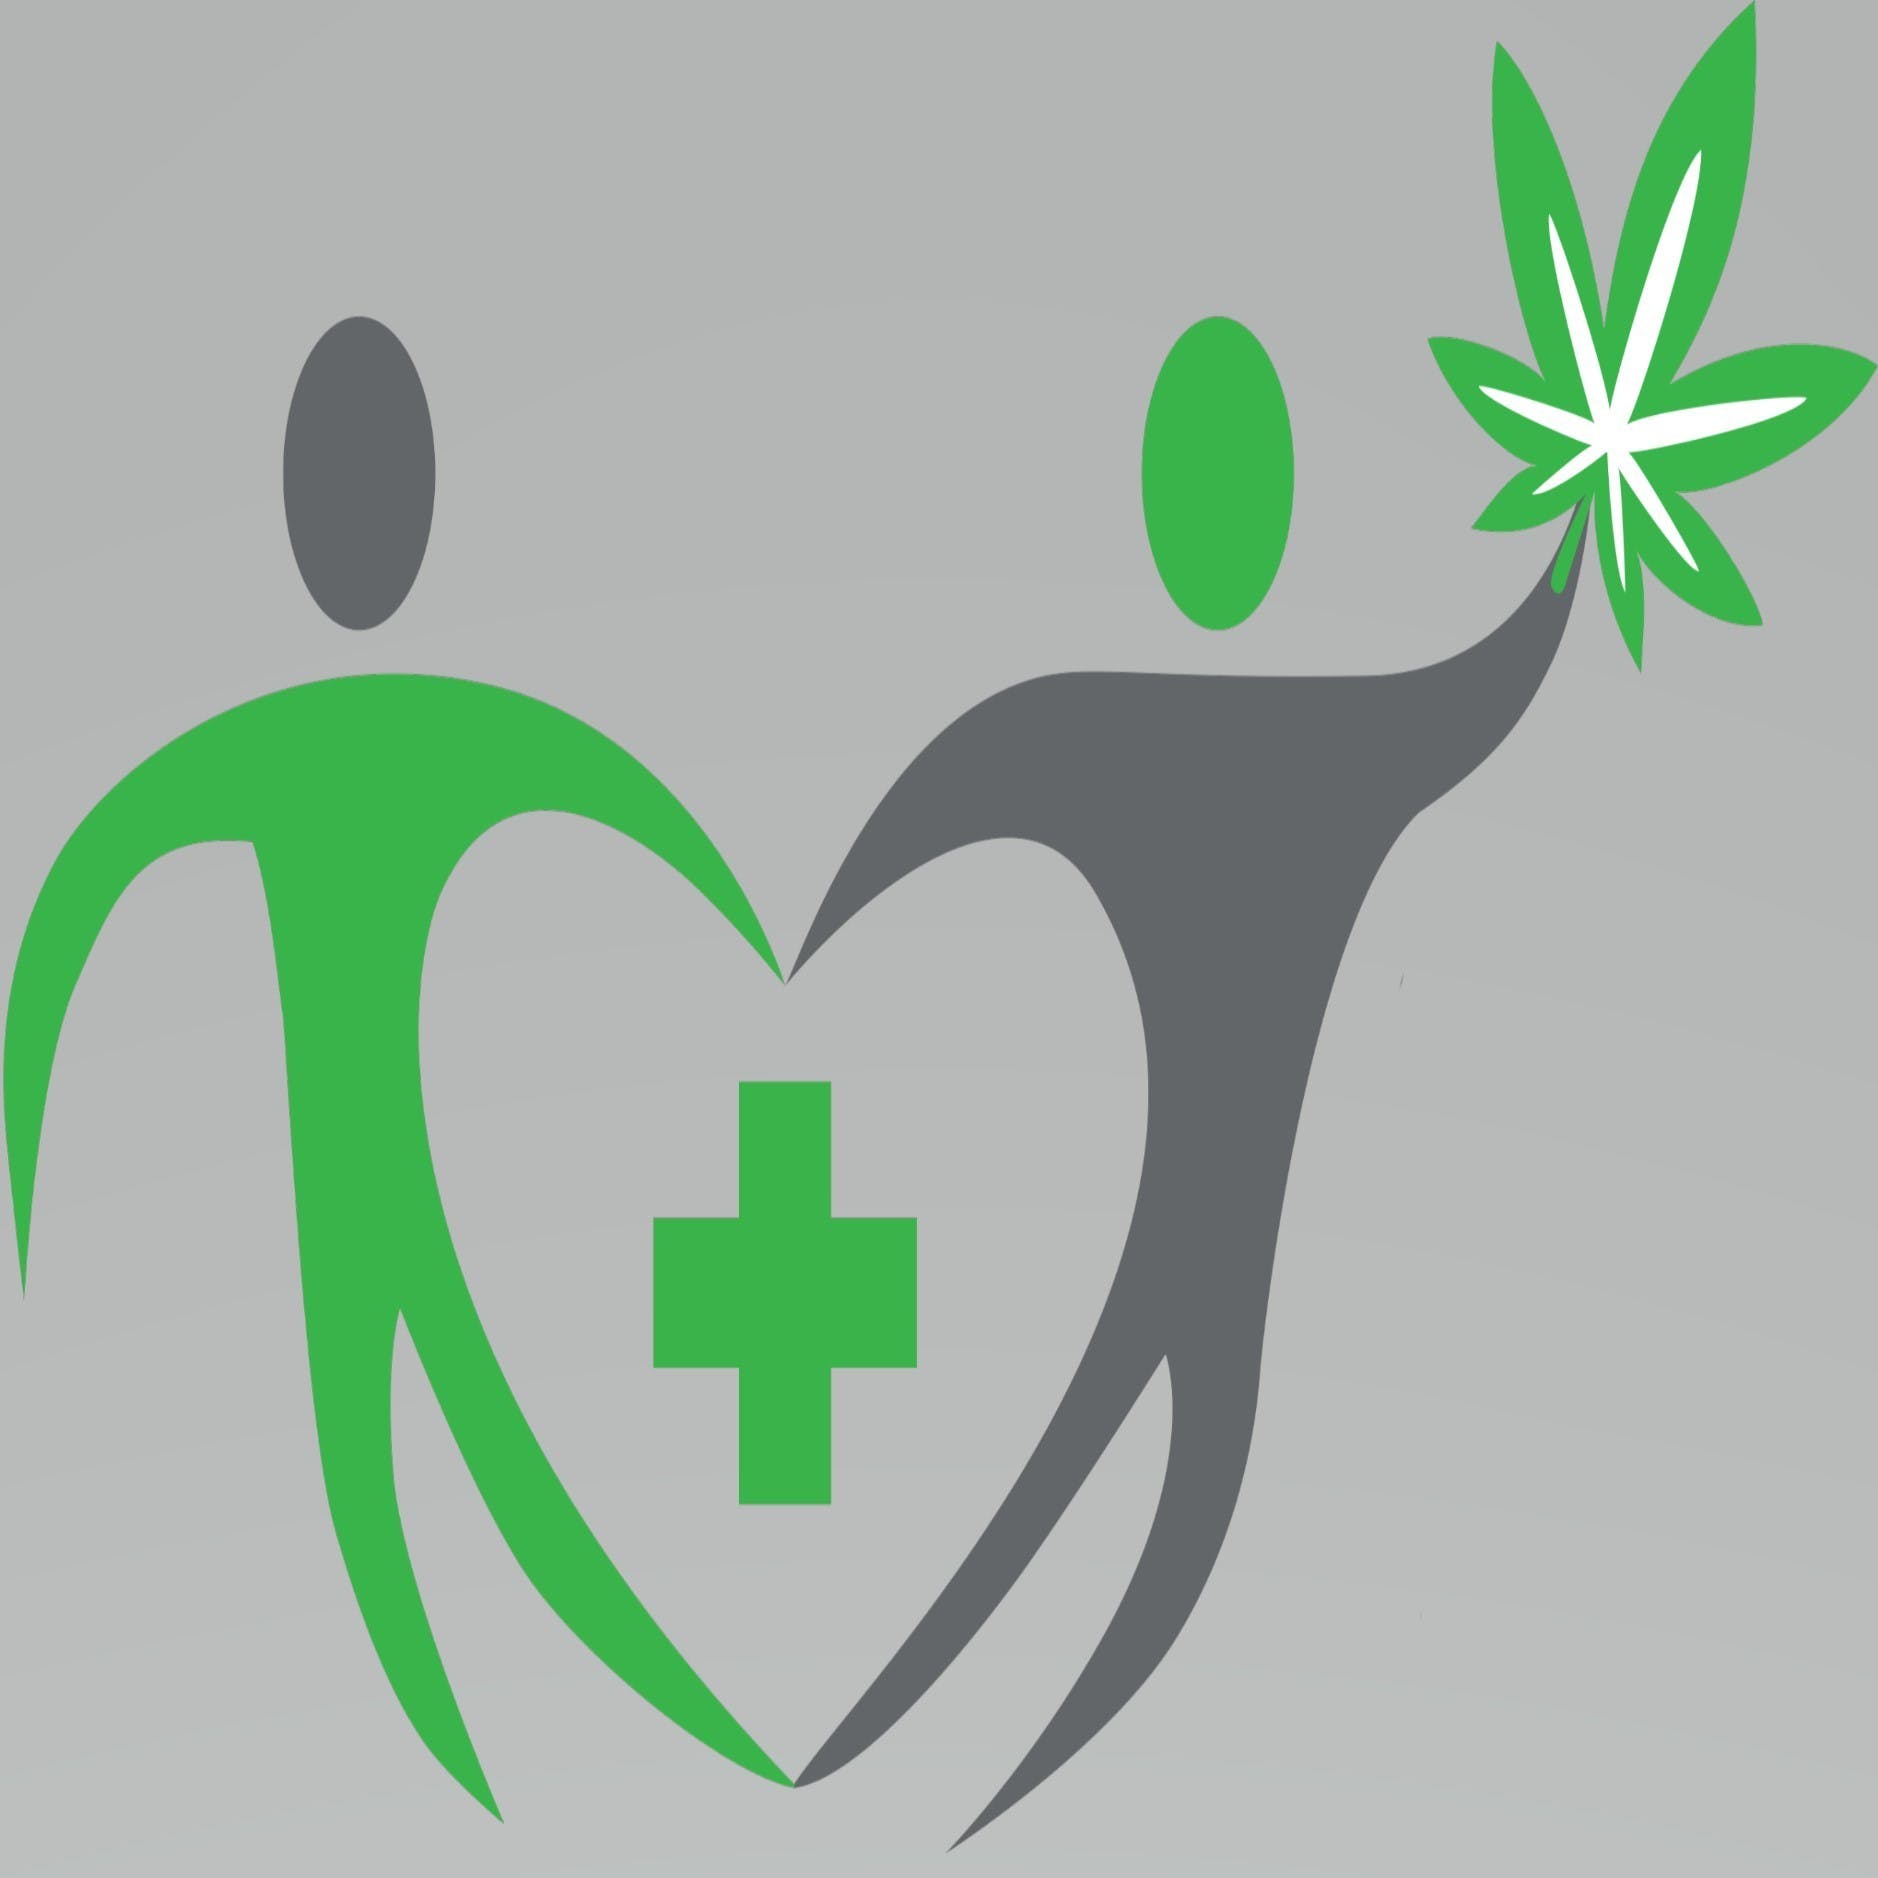 Consultants for Medical Marijuana, LLC - Medical Marijuana Doctors - Cannabizme.com